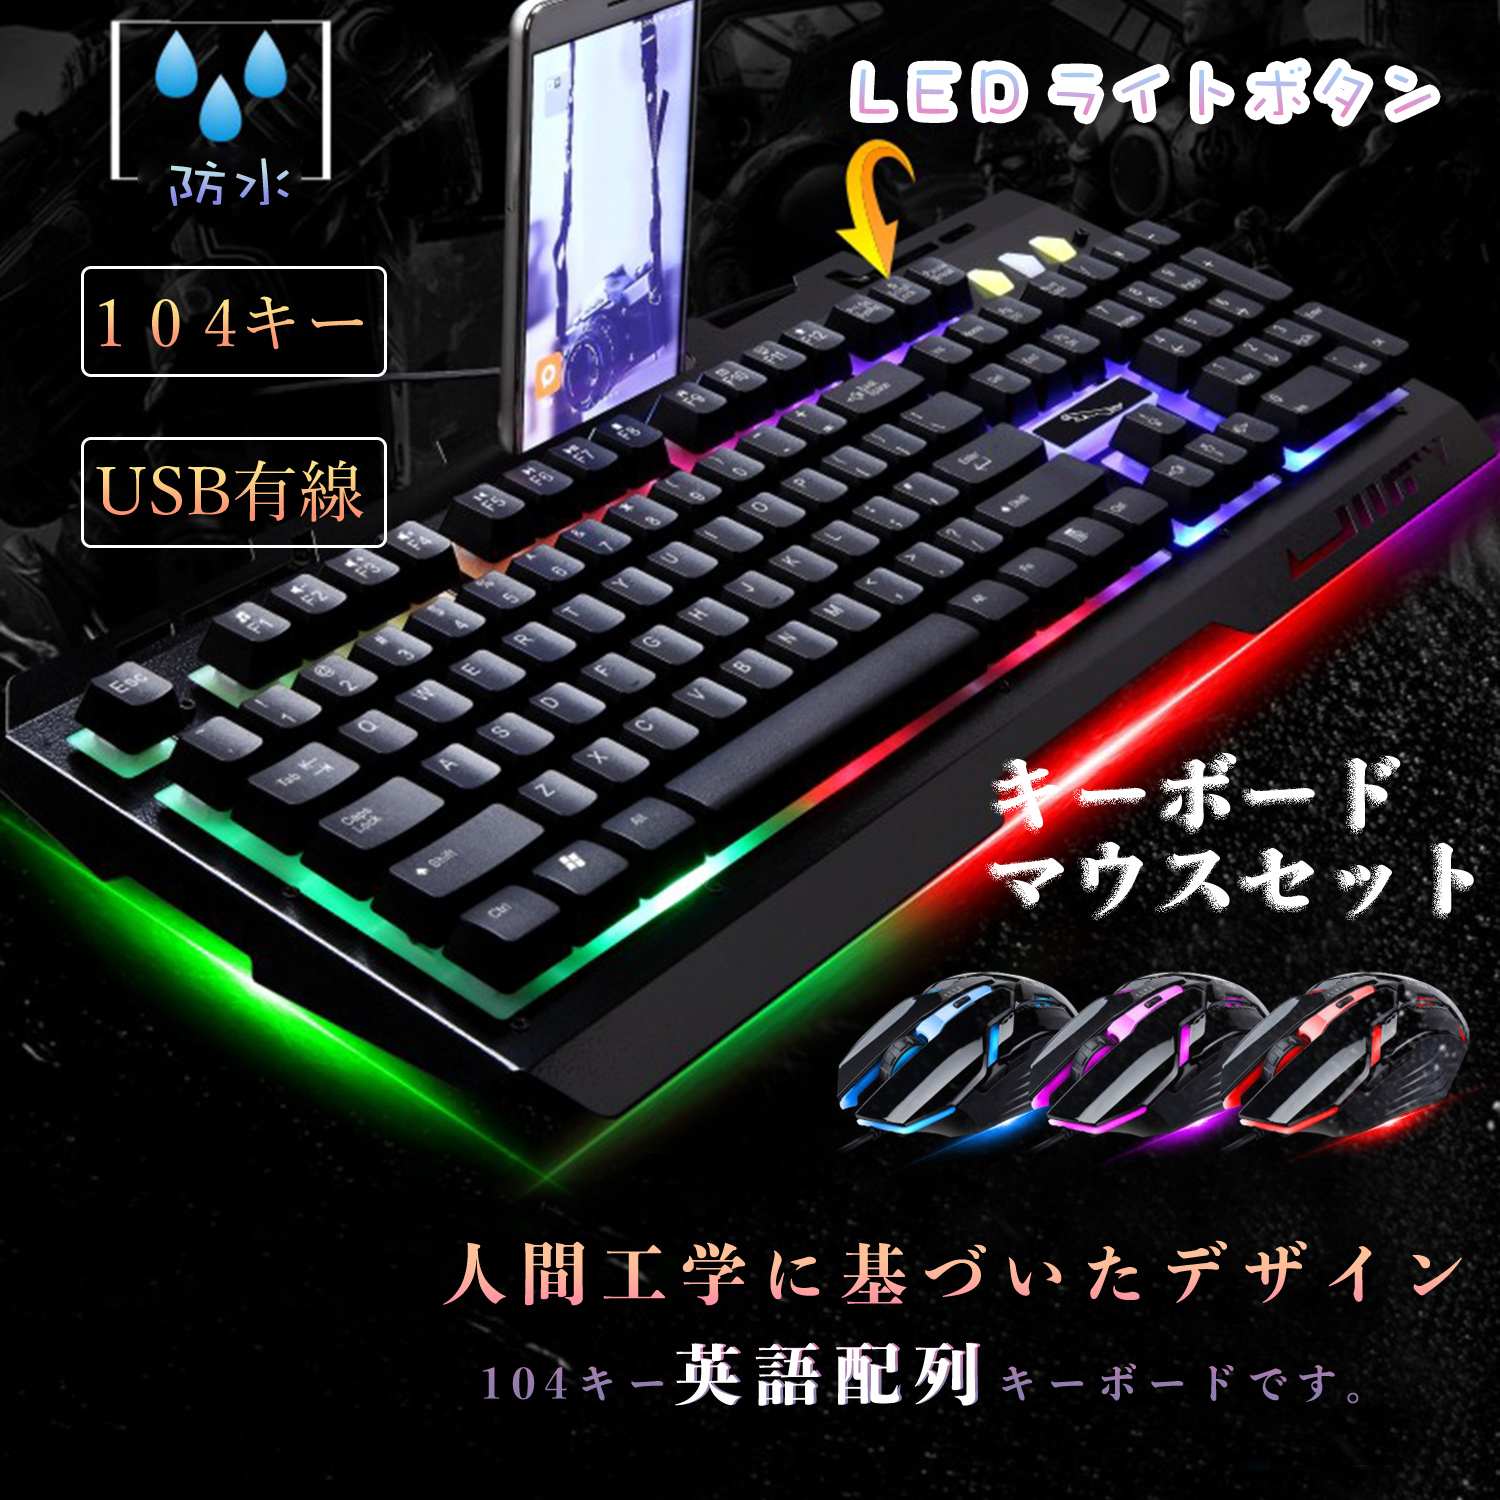 2点セット 大人 子供 ギフト プレゼント ゲーミング キーボード マウス 安いそれに目立つ セット メカニカル 光る LED ライト バックライト  サイドボタン 一式 有線 Mac e-Sports 英語配列 RPG USB接続 FPS パソコン ゲーム Windows MMO DPI